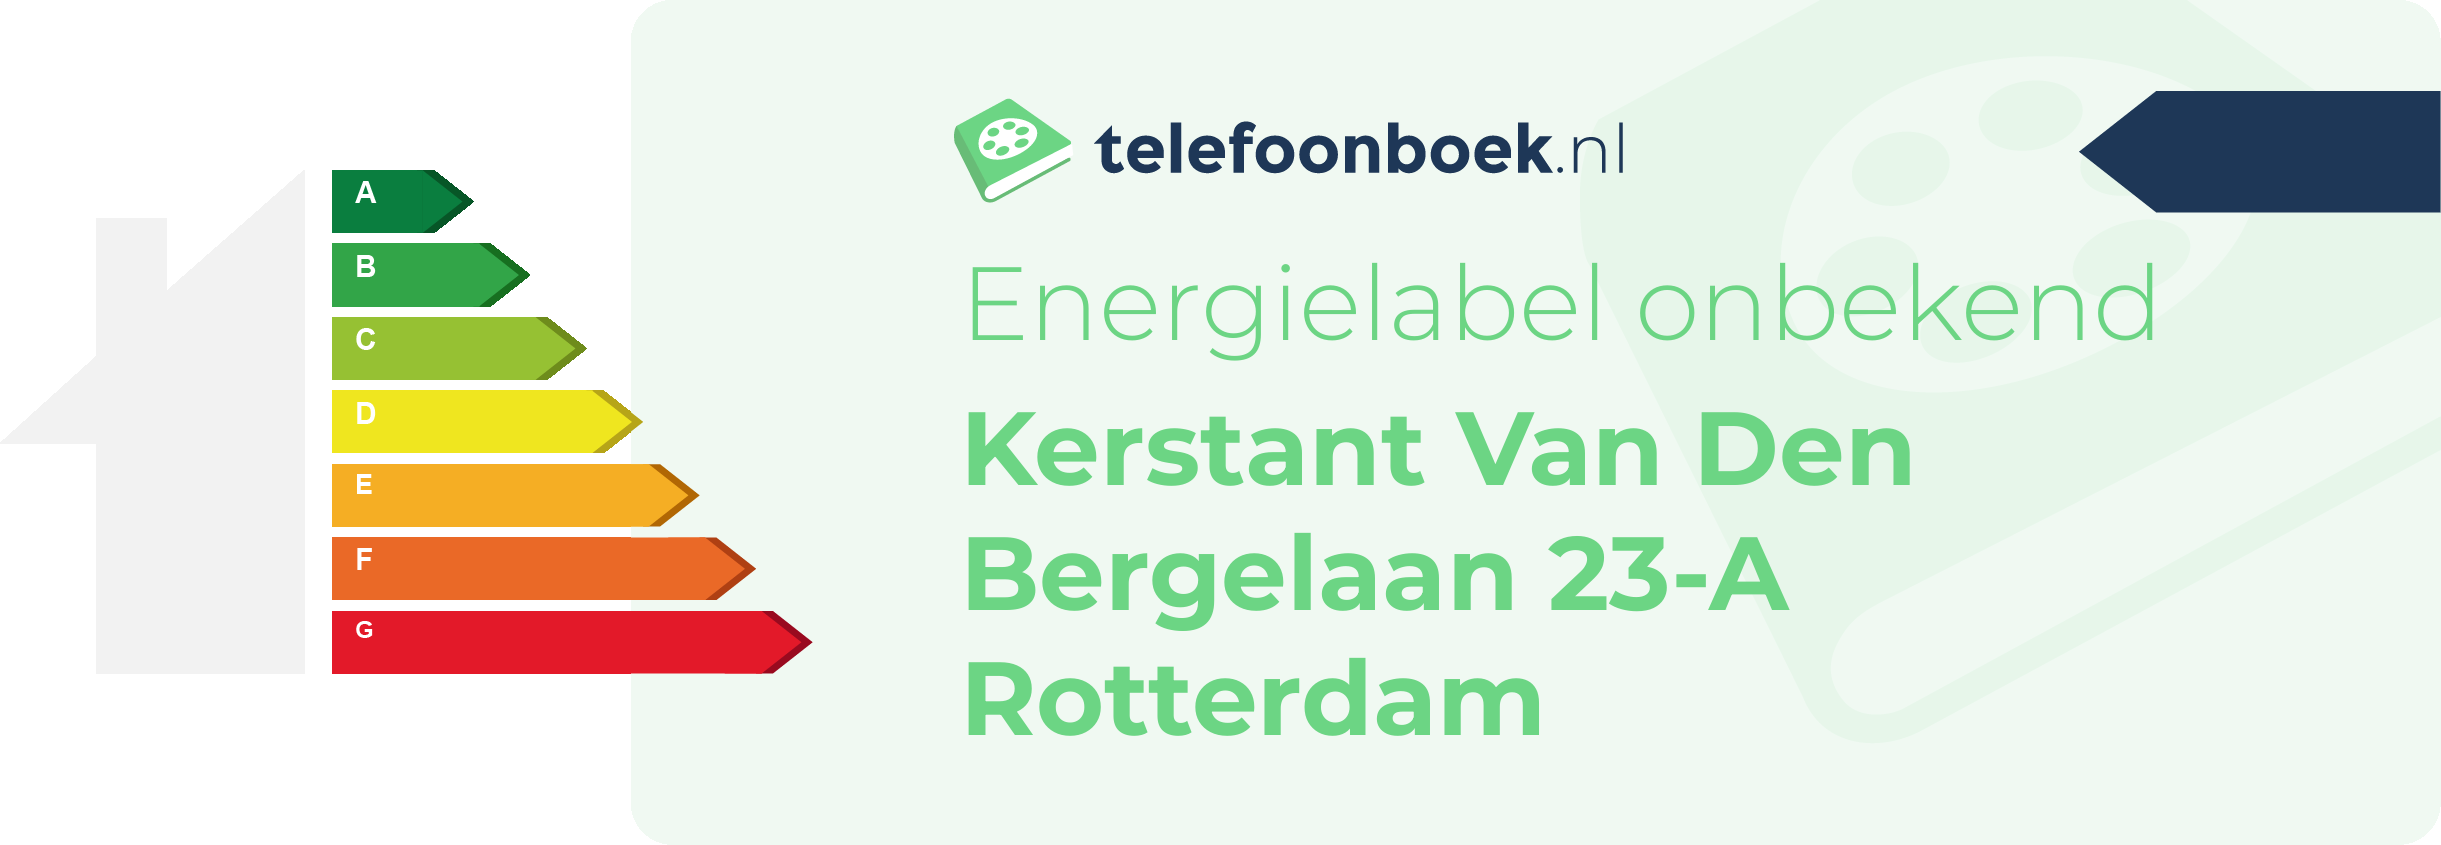 Energielabel Kerstant Van Den Bergelaan 23-A Rotterdam